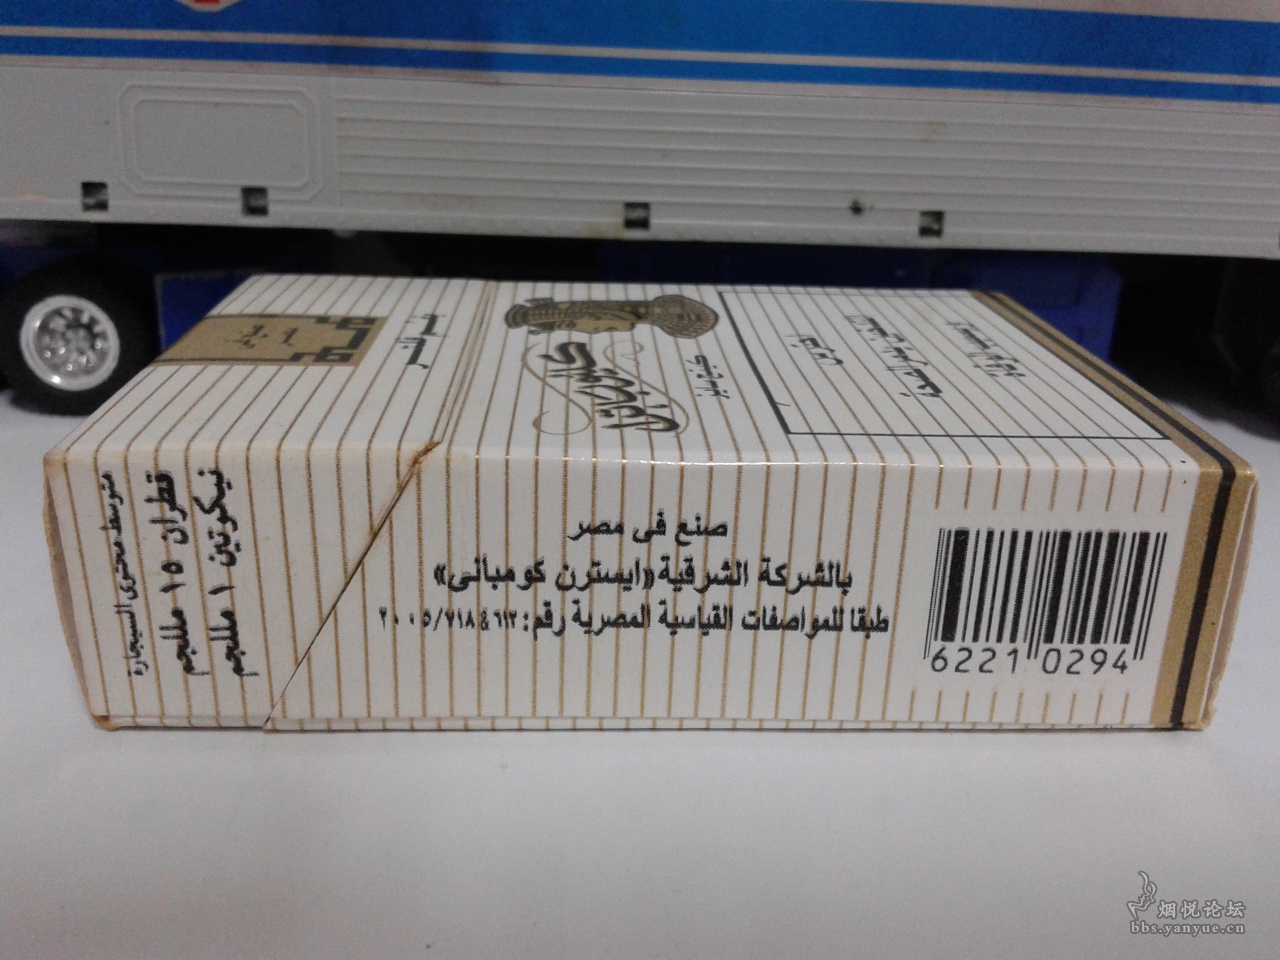 埃及东方烟草公司的。。。埃及艳后。。。 - 香烟漫谈 - 烟悦网论坛